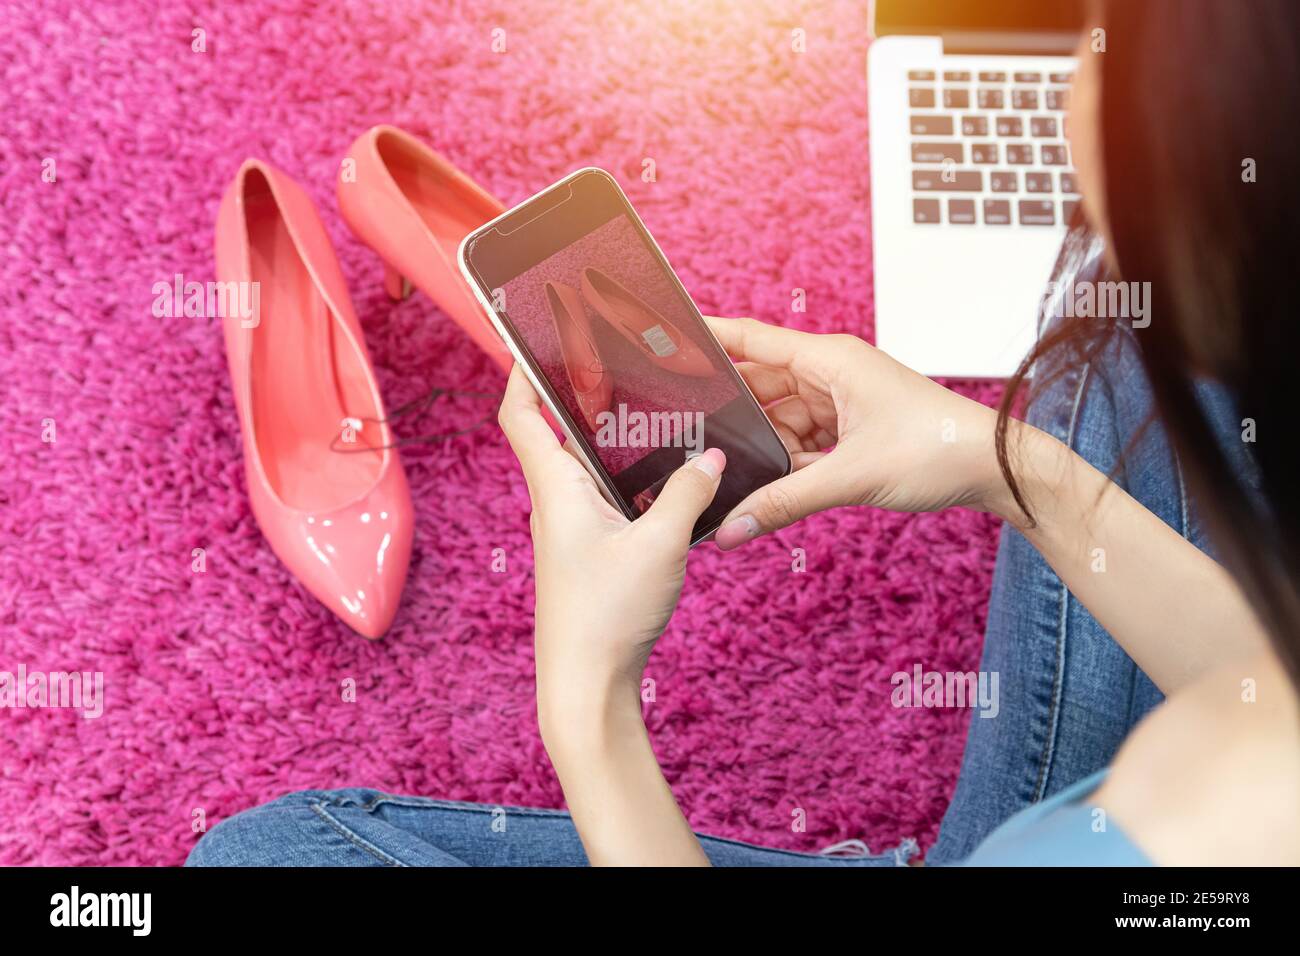 Verkauf Online-Idee Konzept. Online-Verkäufer verwenden Handy Nehmen Sie ein Foto von High Heels Schuh für den Upload auf Online-Shop-Website. Stockfoto